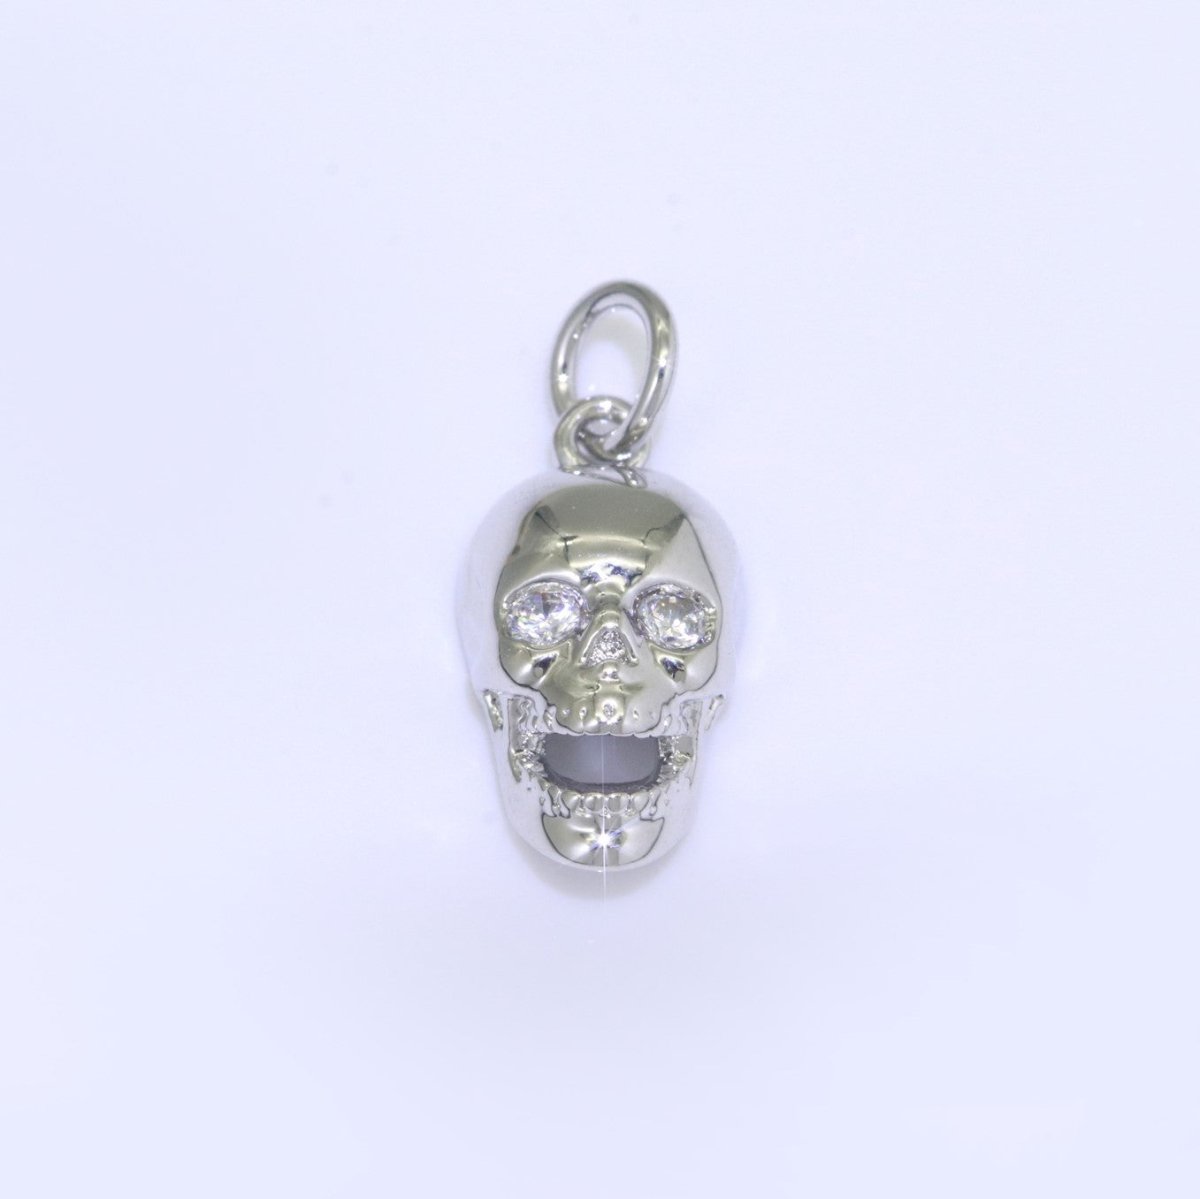 Gold Skull Charm, Skull Pendant, 3D Skull Pendant Gold Filled Charm, Pewter, Silver Black Gun Metal Charm Bracelet Necklace for halloween M-508 - M-510 - DLUXCA